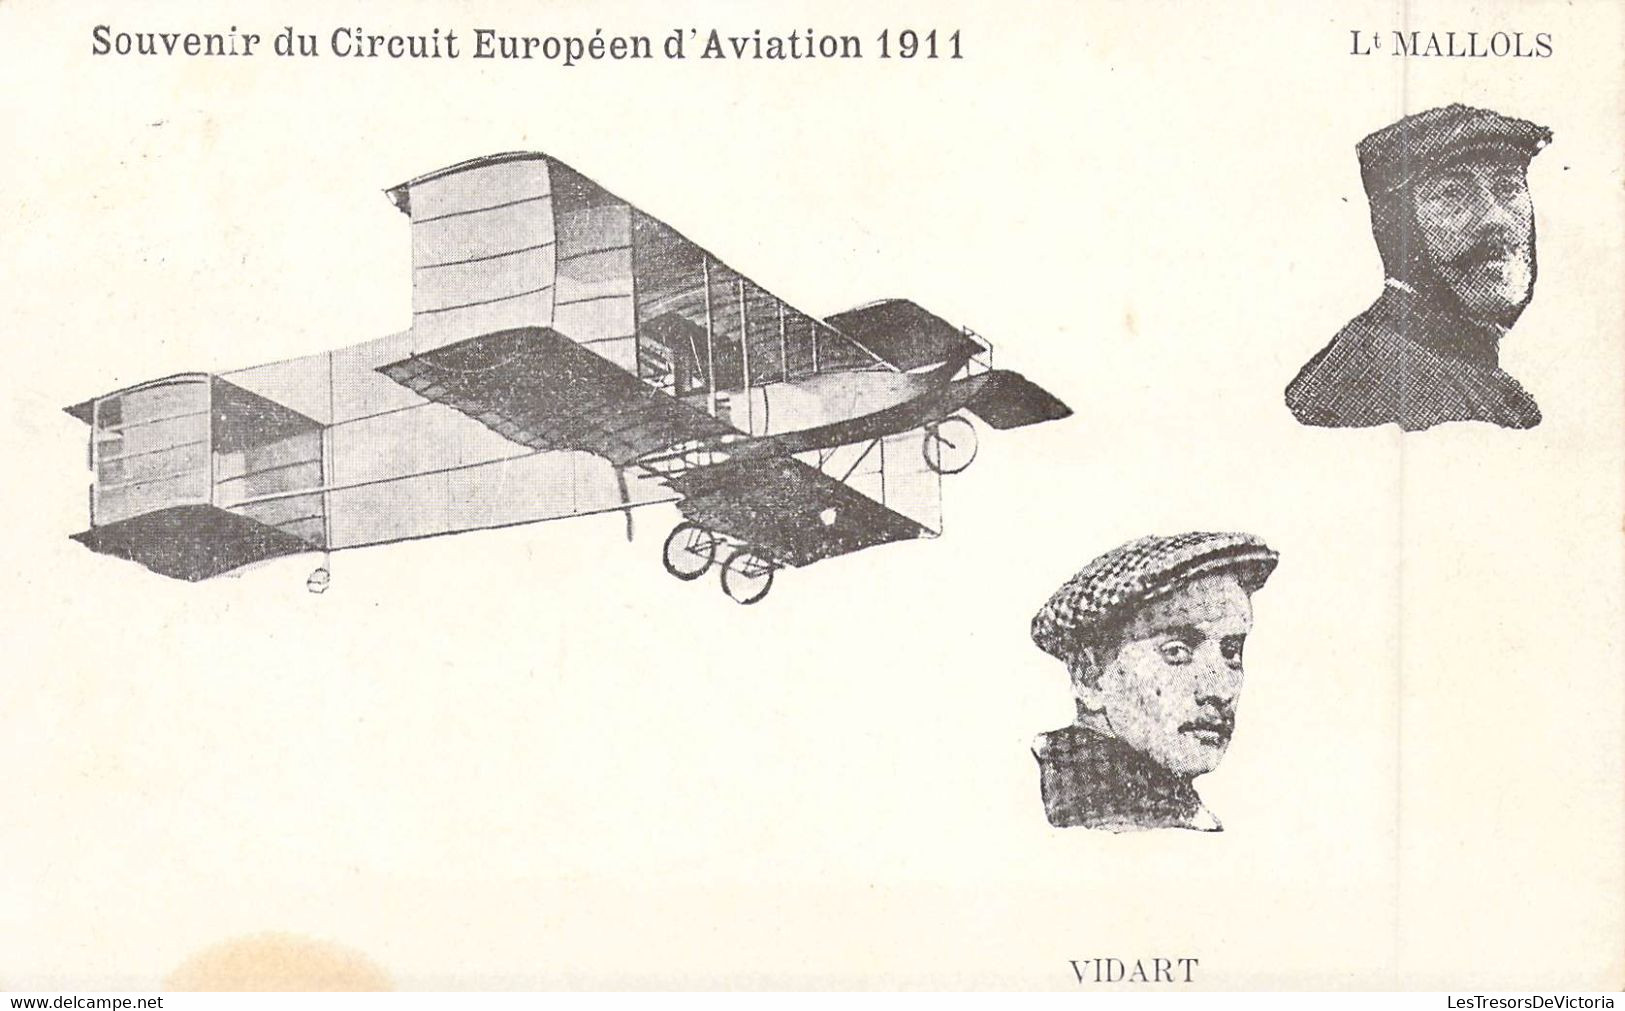 Aviateur - Aviation - Souvenirs Du Circuit D'aviation 1911 - Lt Mallols - Mr Vidart - Carte Postale Ancienne - Airmen, Fliers